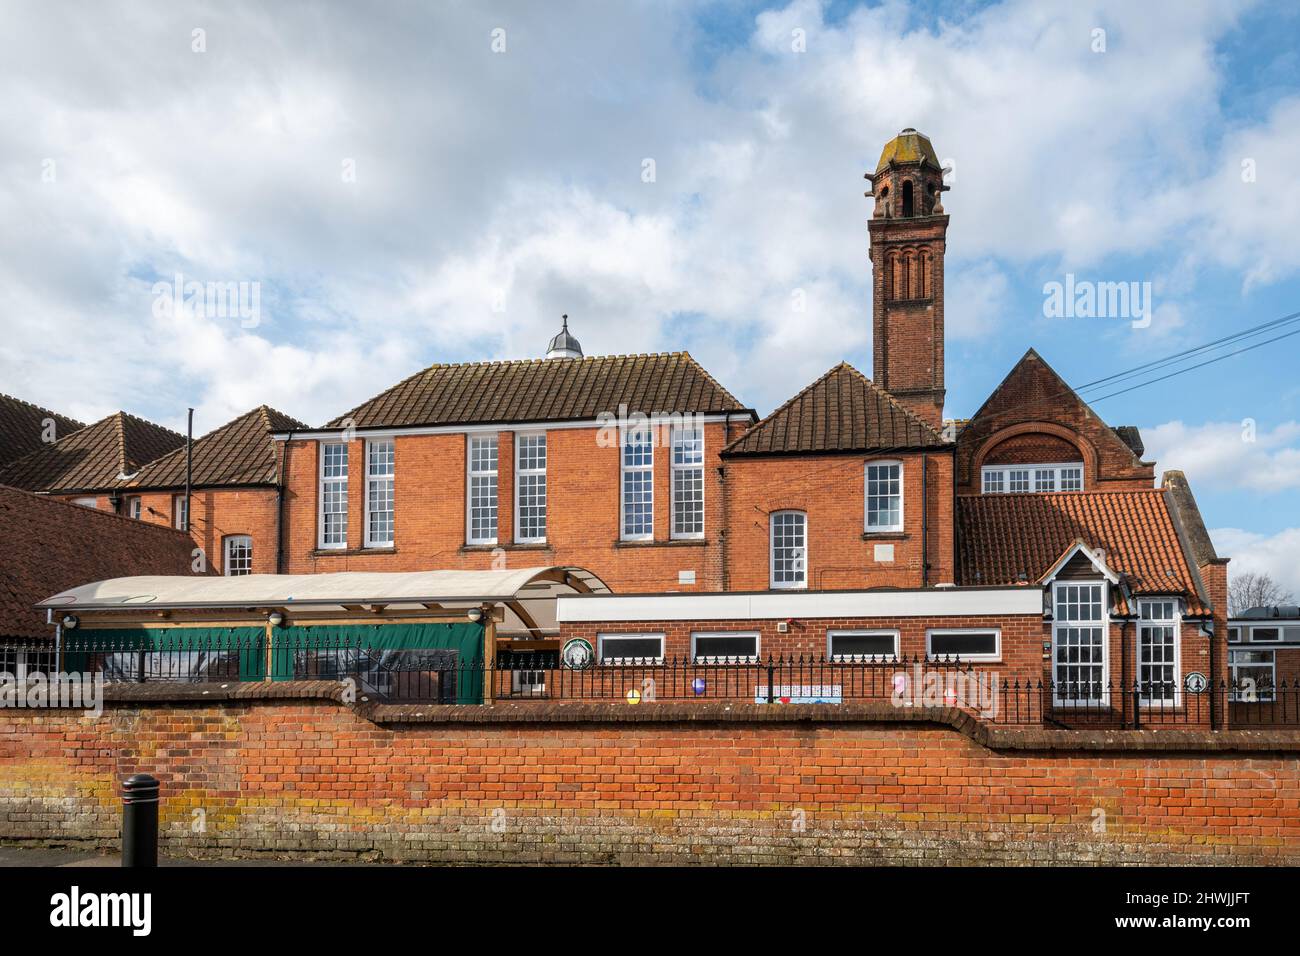 École primaire de Fairfields dans la ville de Basingstoke, Hampshire, Angleterre, Royaume-Uni. Extérieur du bâtiment victorien en briques. Banque D'Images